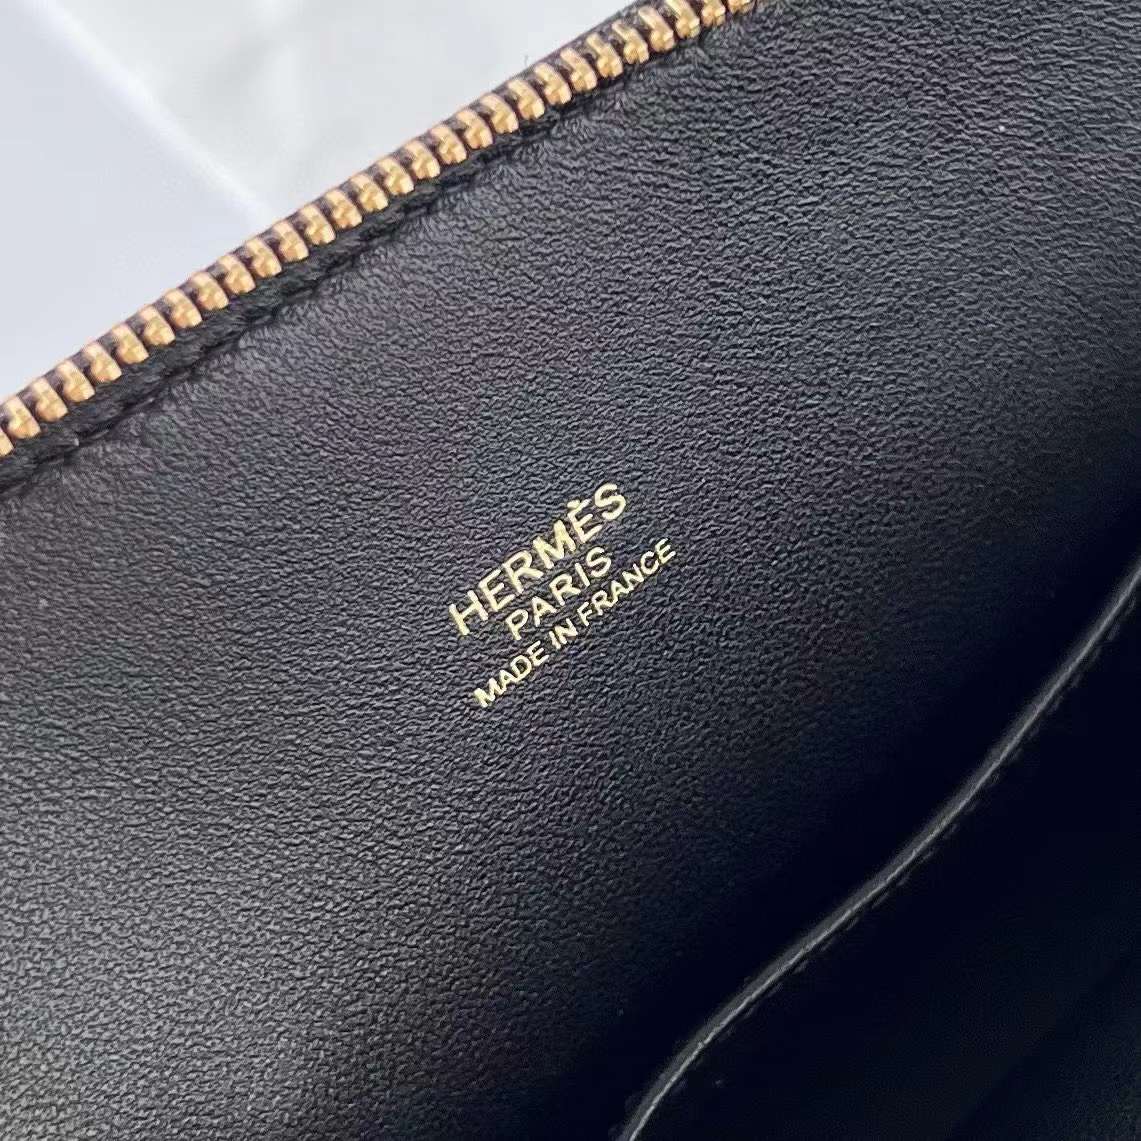 Hermès（爱马仕）Mini Bolide 迷你保龄球包 Chevre 山羊皮 Ck89 黑色 金扣 19cm 全手工蜡线缝制 Ghw